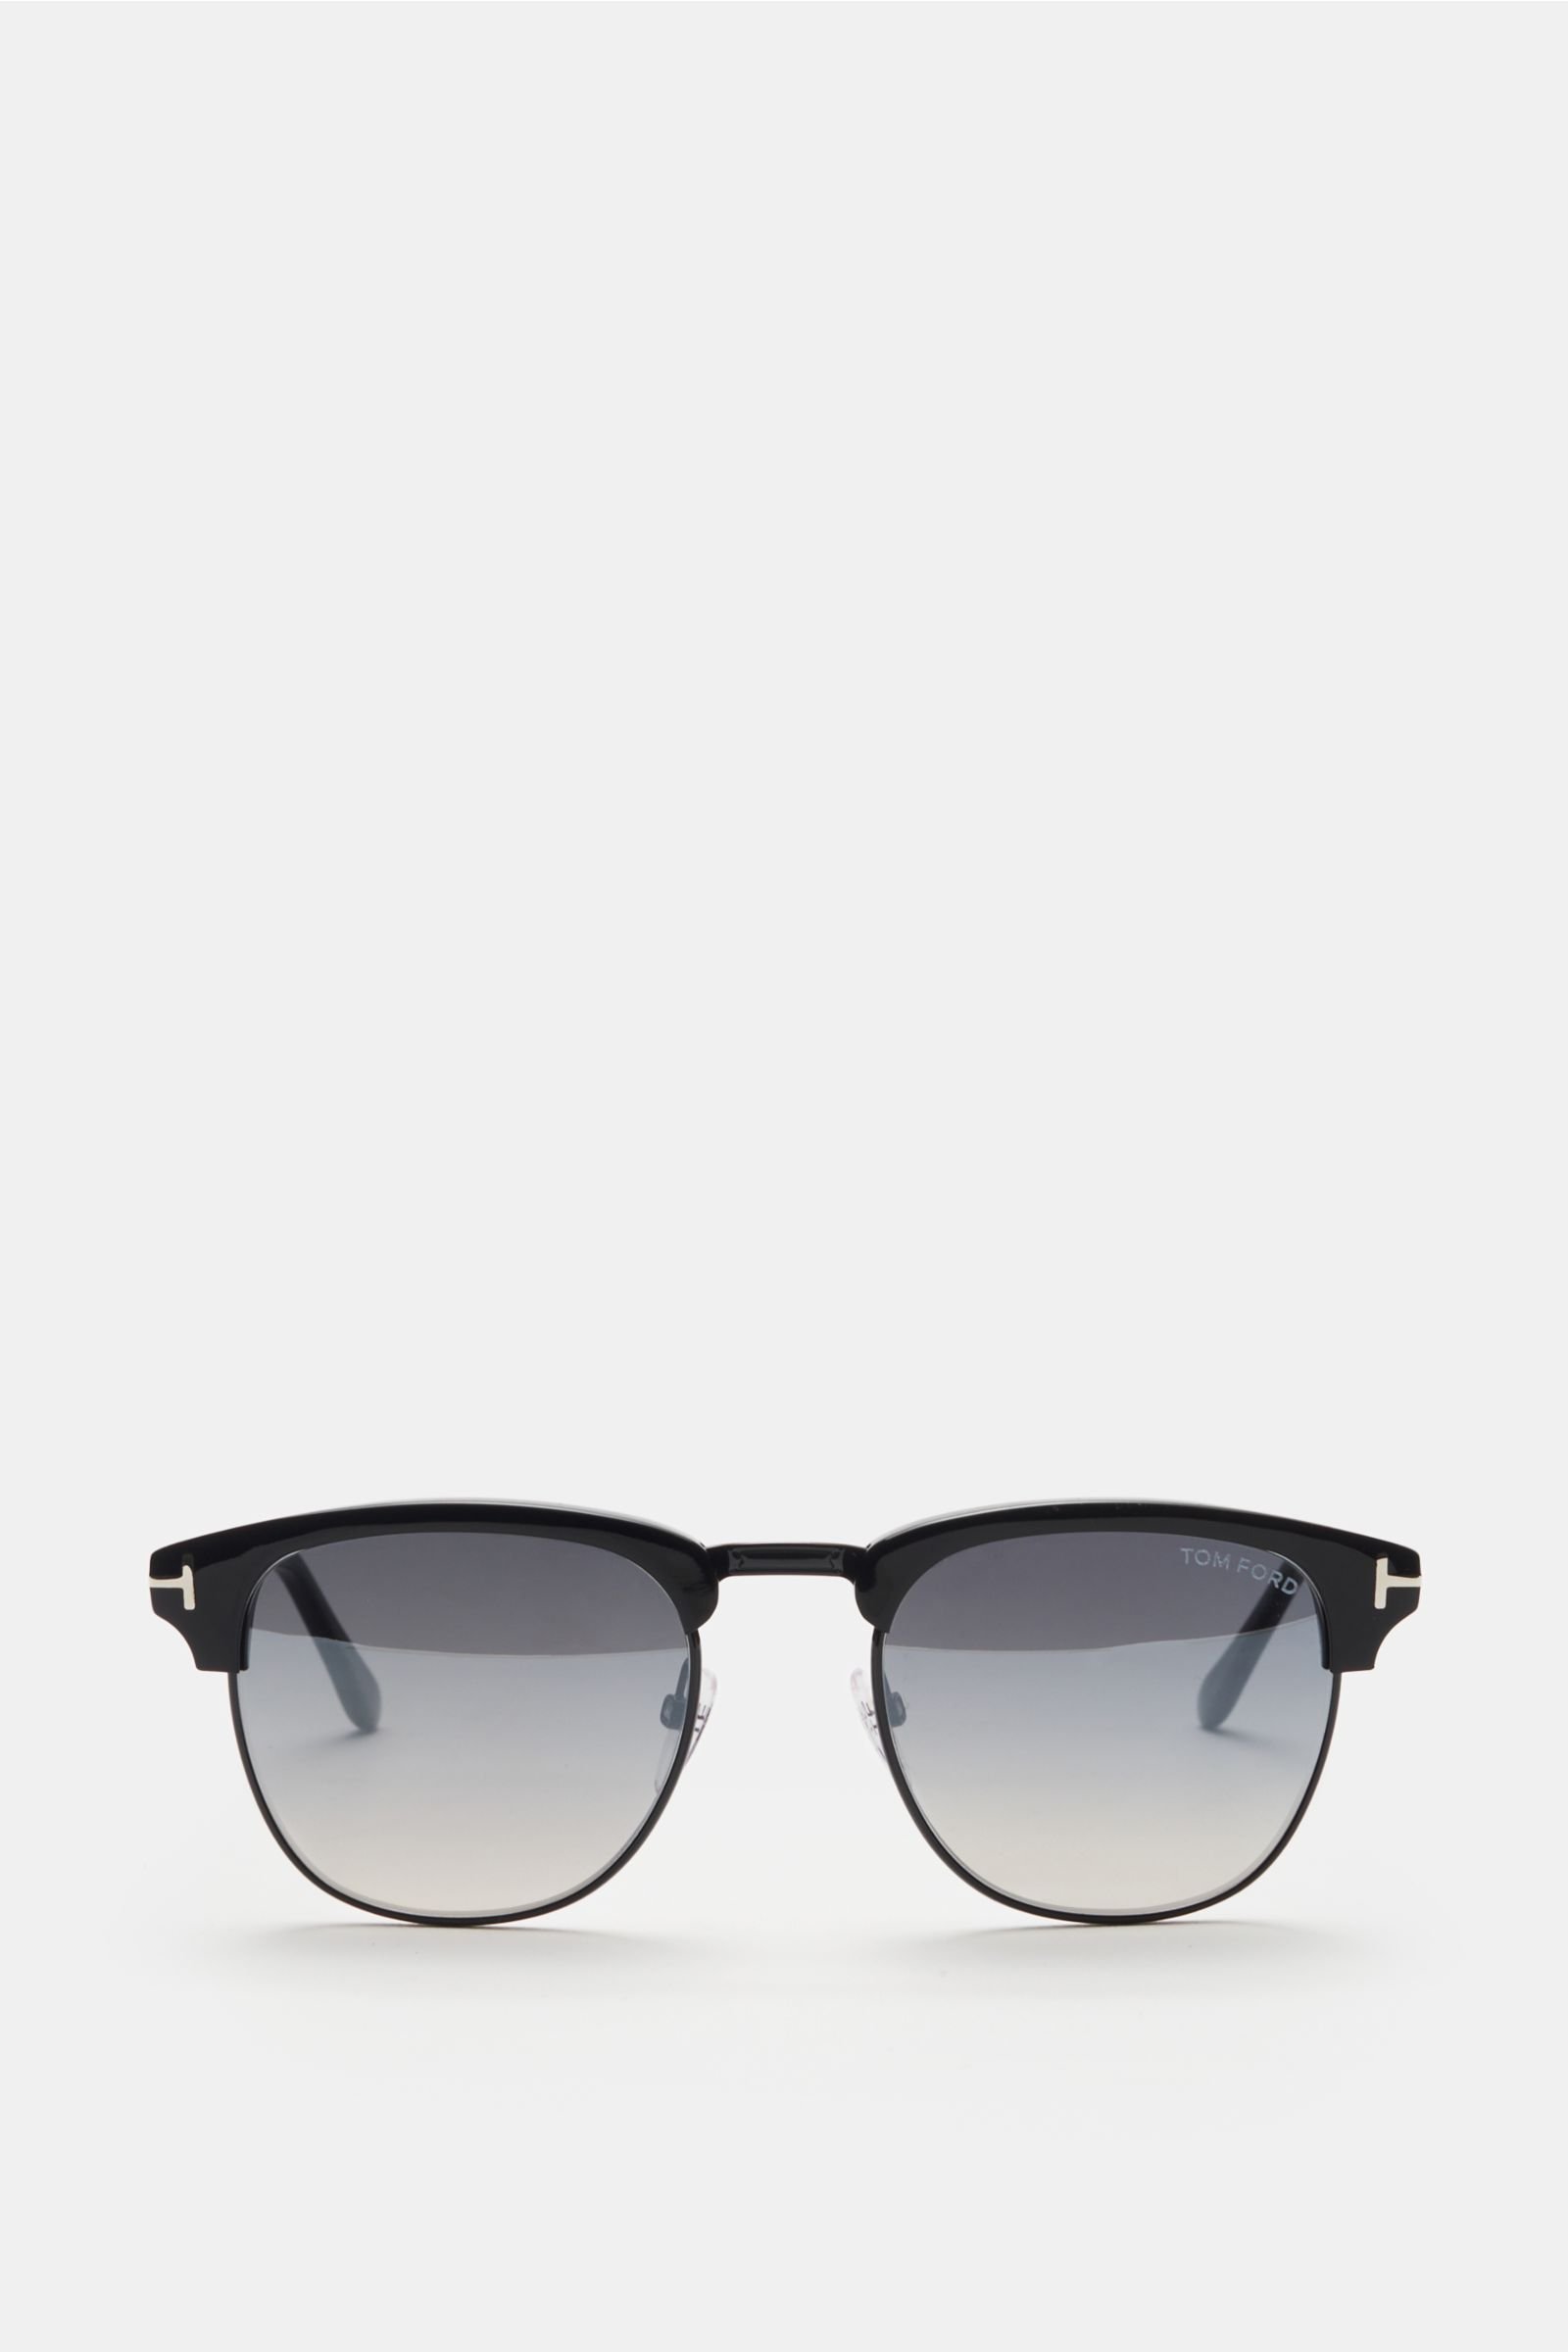 Sonnenbrille 'Henry' schwarz/grau